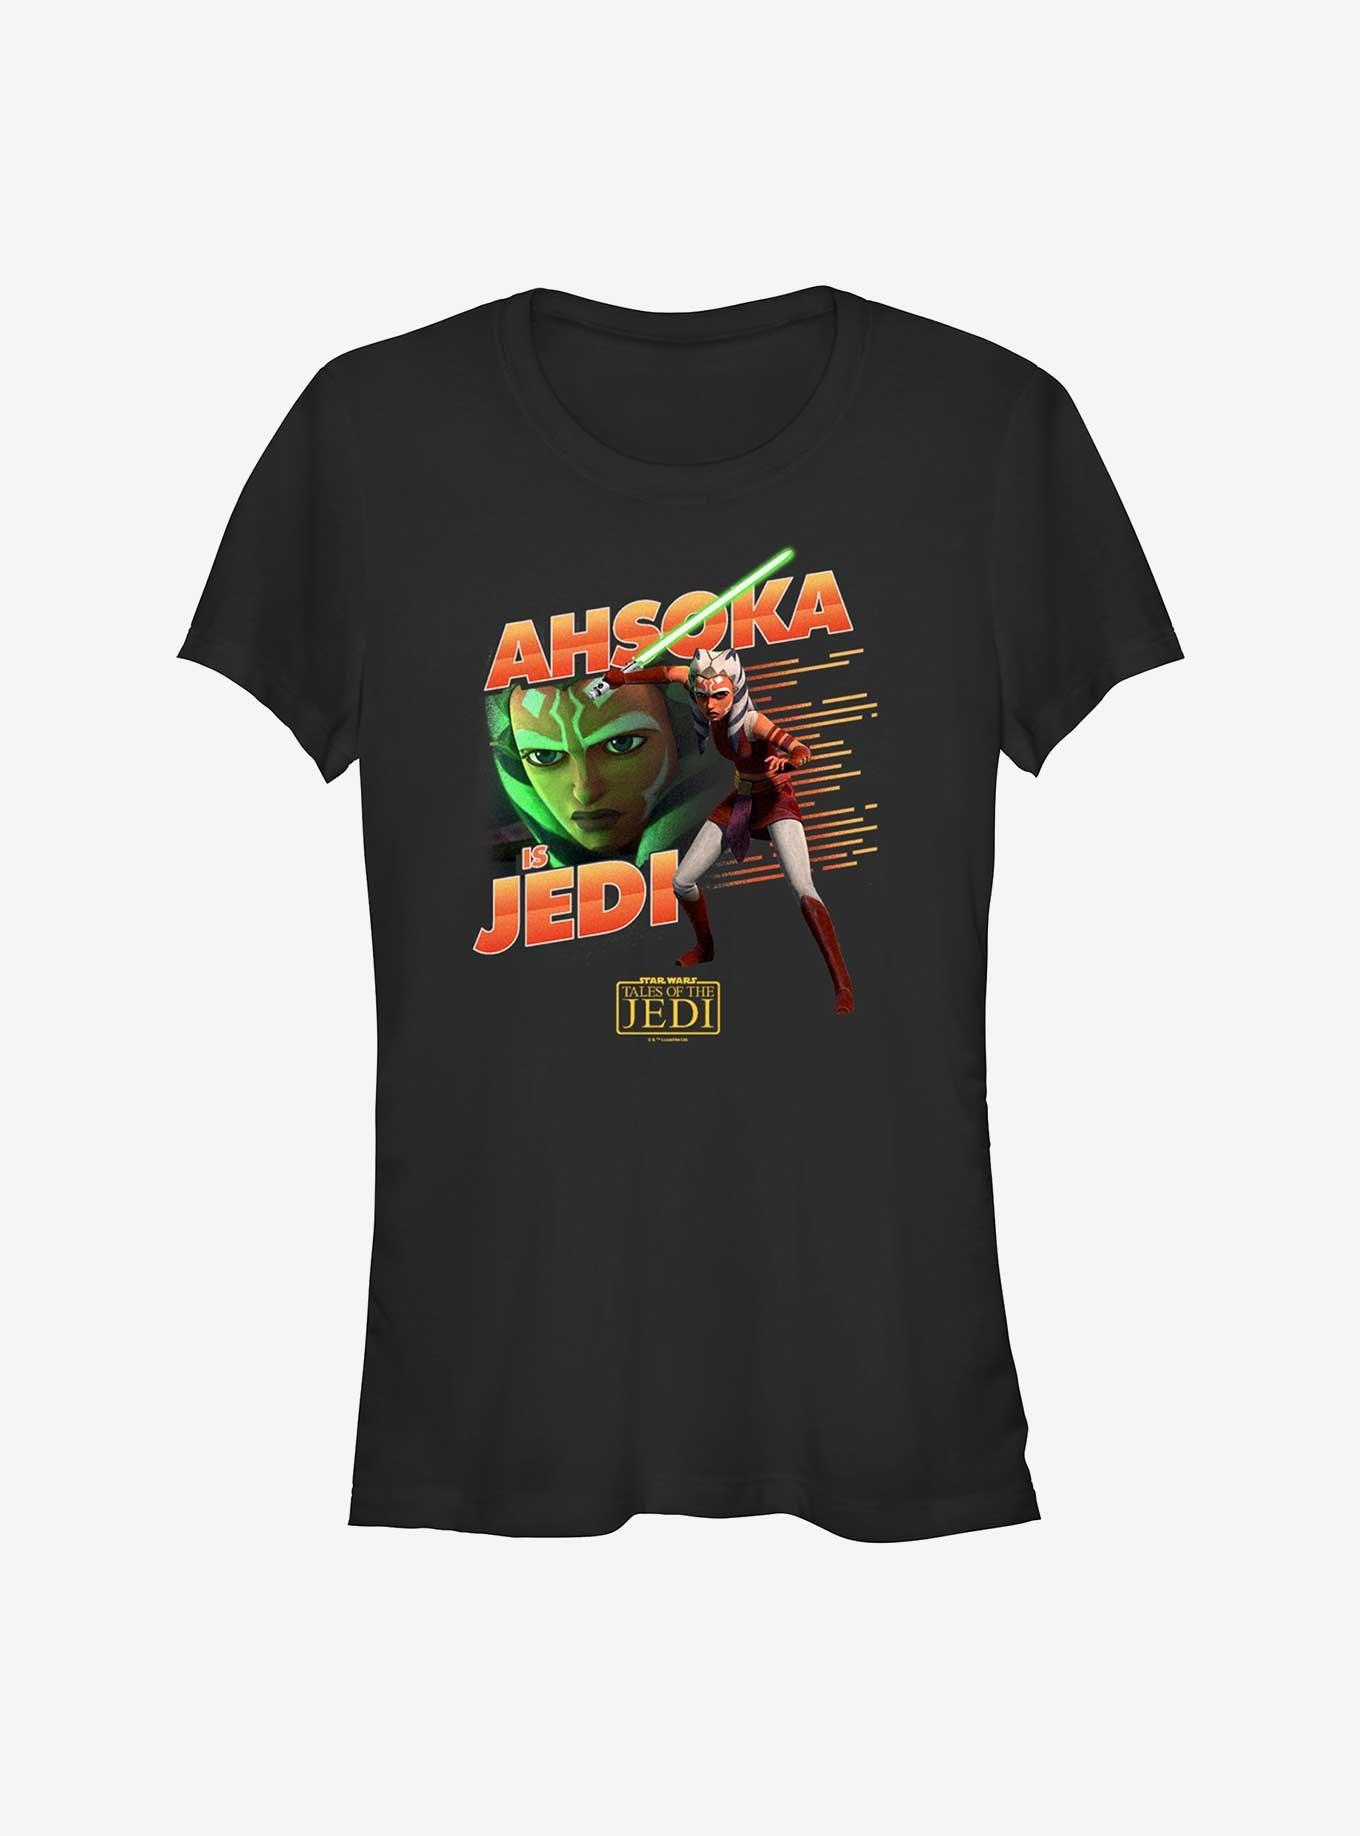 Star Wars: Tales of the Jedi Ahsoka Is Jedi Girls T-Shirt, , hi-res